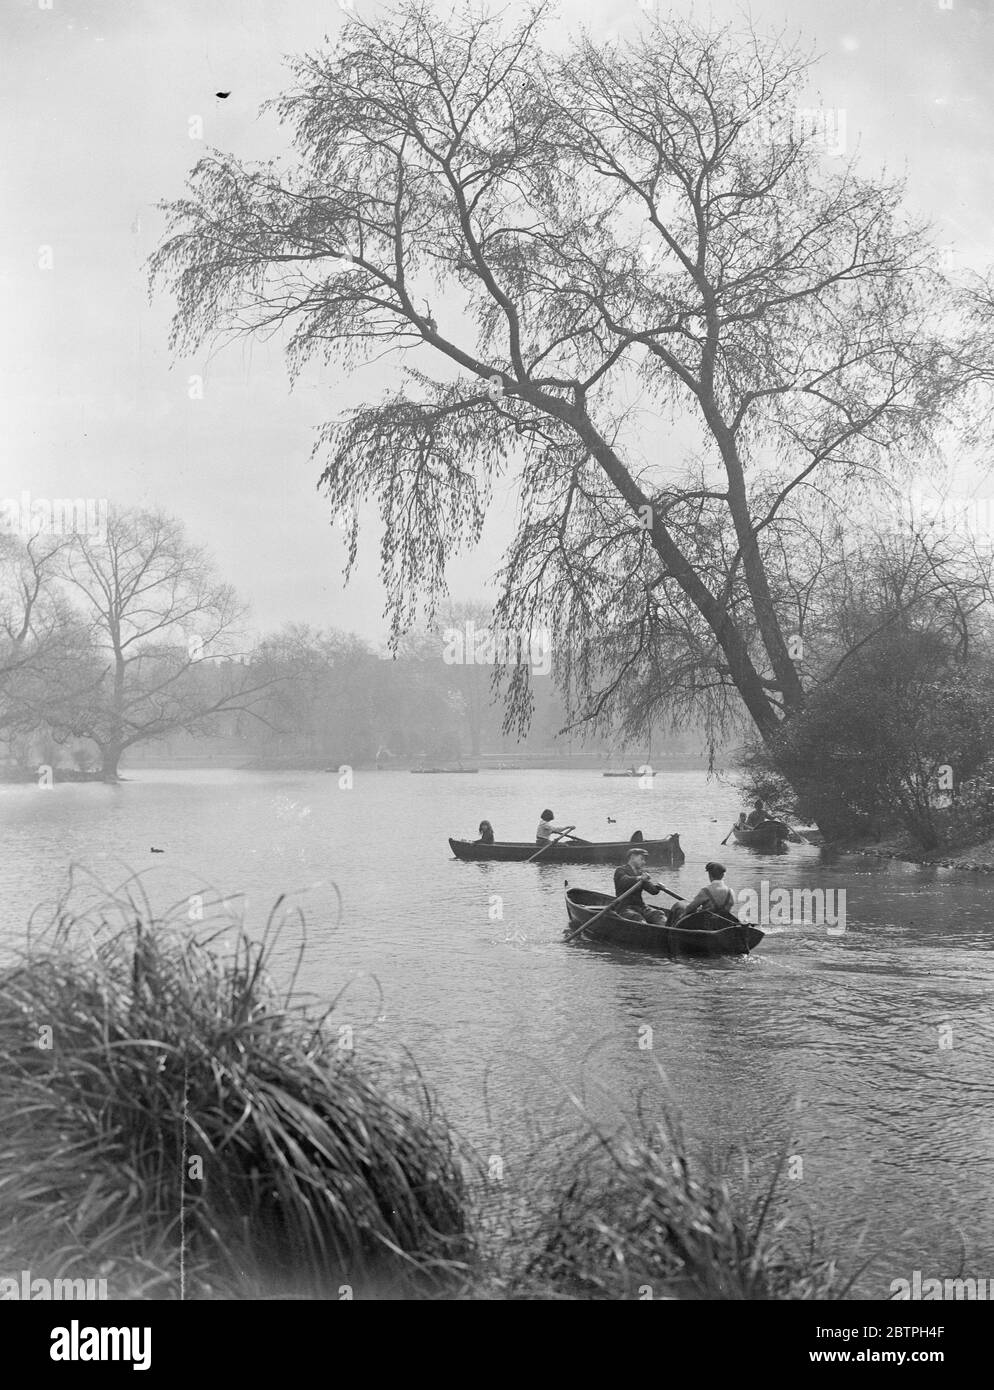 Frühling in London . Besucher Battersea Park , London Bootfahren auf dem See als Zeichen des Frühlings zeigen sich in den umliegenden Bäumen . April 1932 Stockfoto